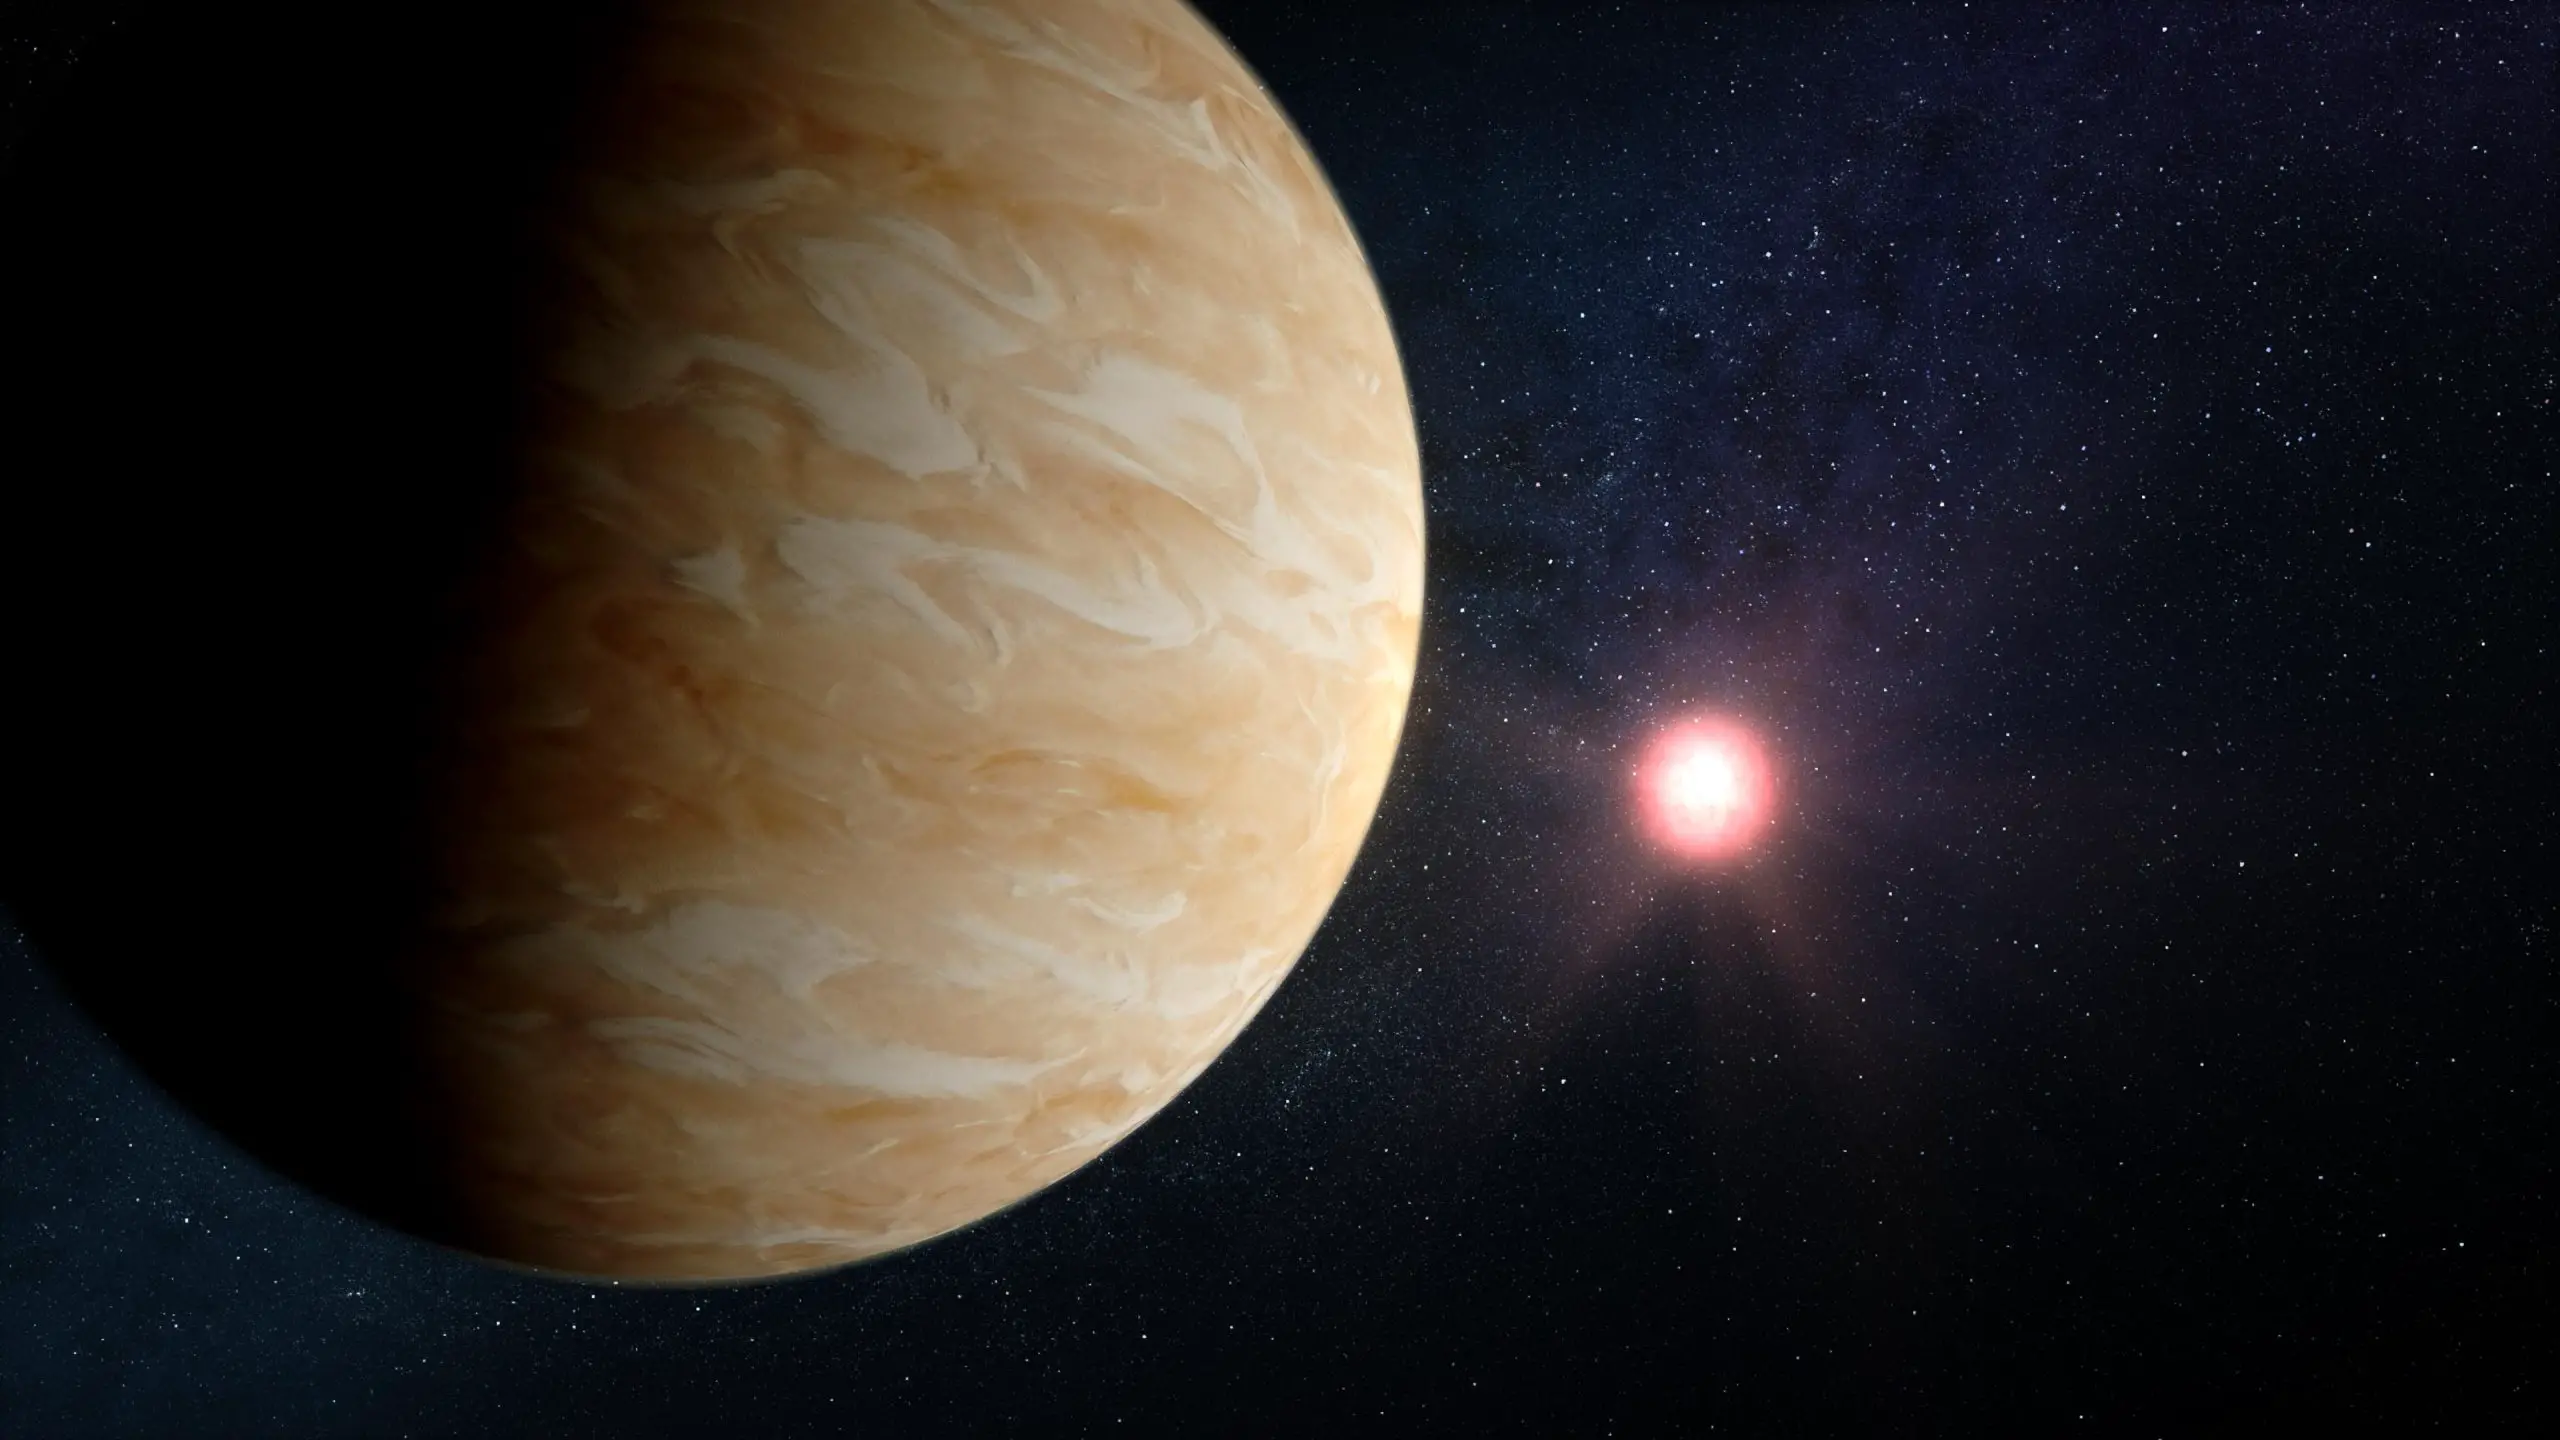 Planet GJ 1214 b